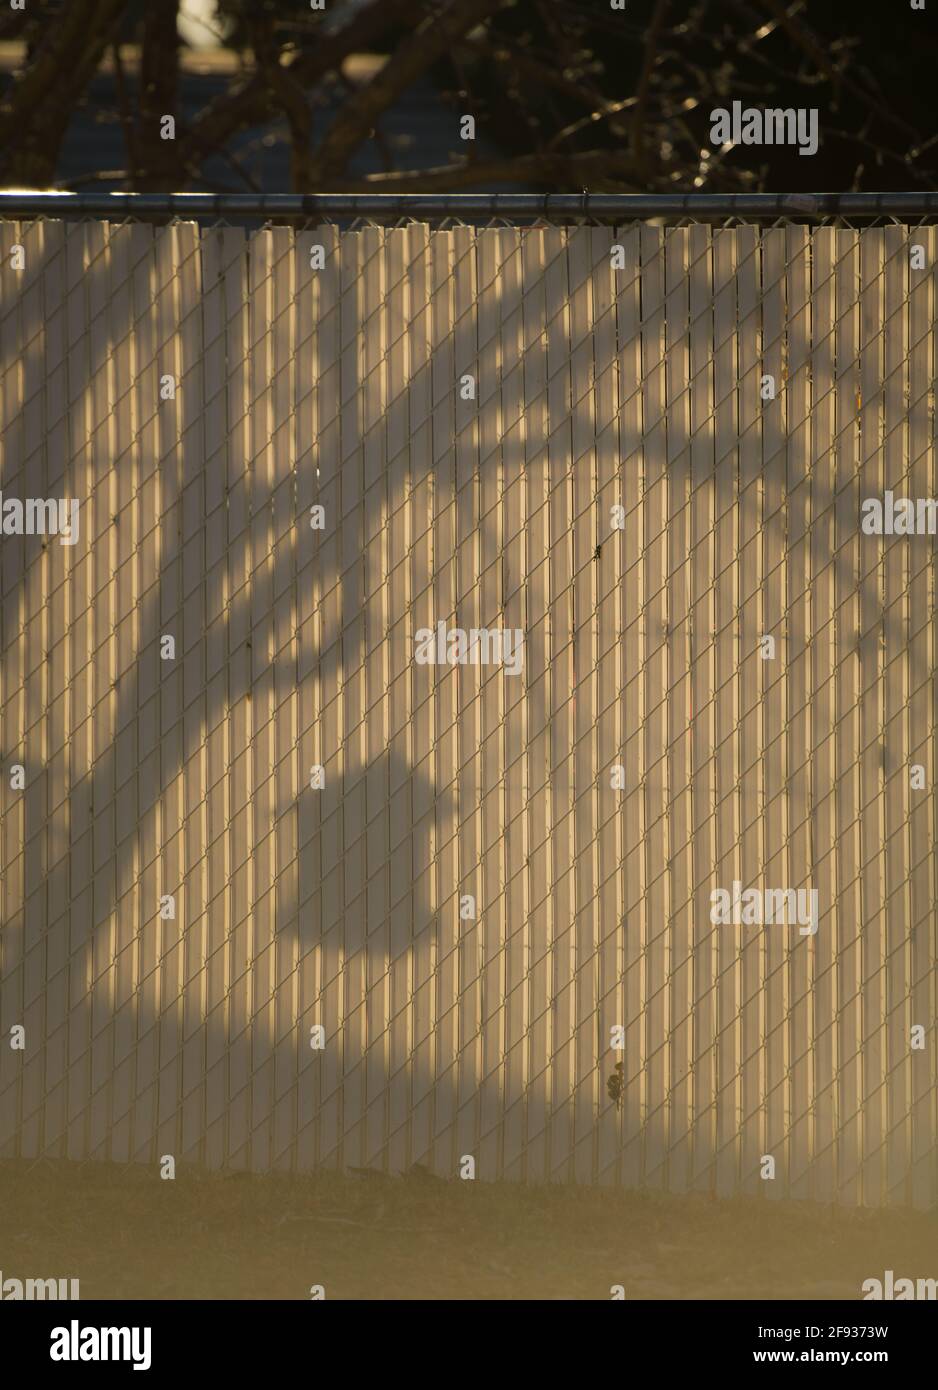 Schatten am Zaun des Vogelfutterhäuschen, die an einem Baum hängen Städtisches Viertel weißer Zaun schwarzer Schatten von Ästen leer Platz für type Morgensonne Stockfoto